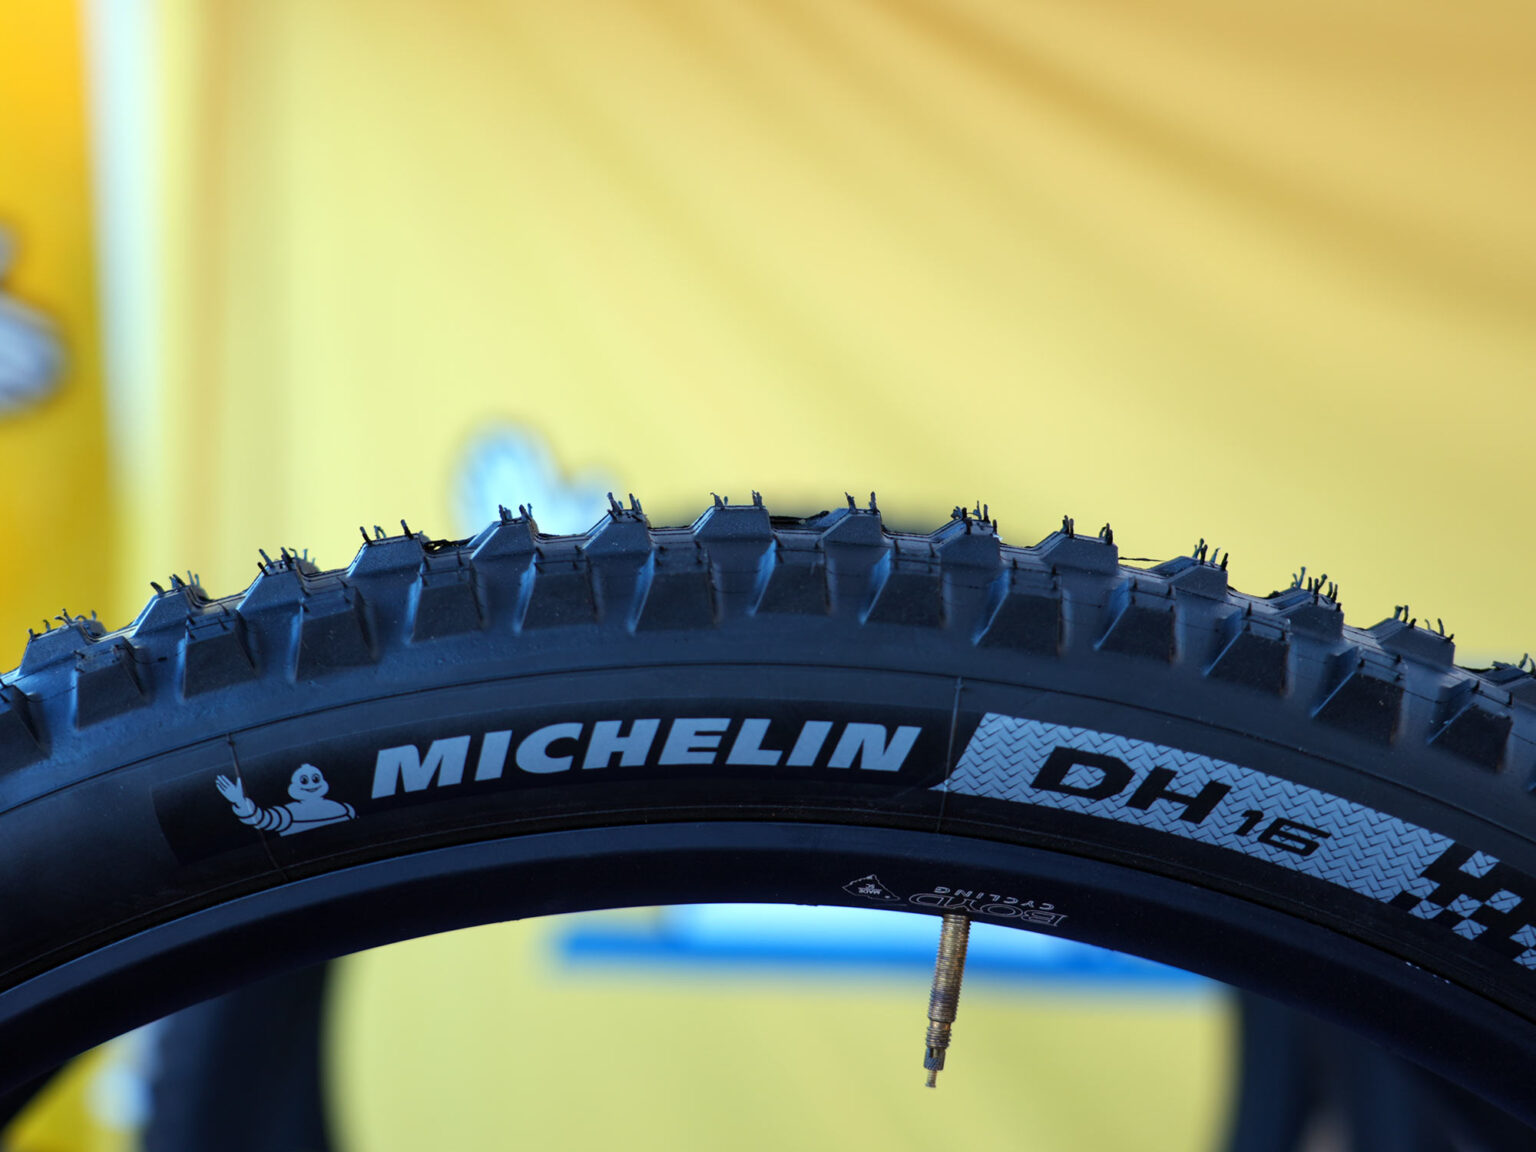 Michelin DH16 downhill mountain bike tire side profile of tread